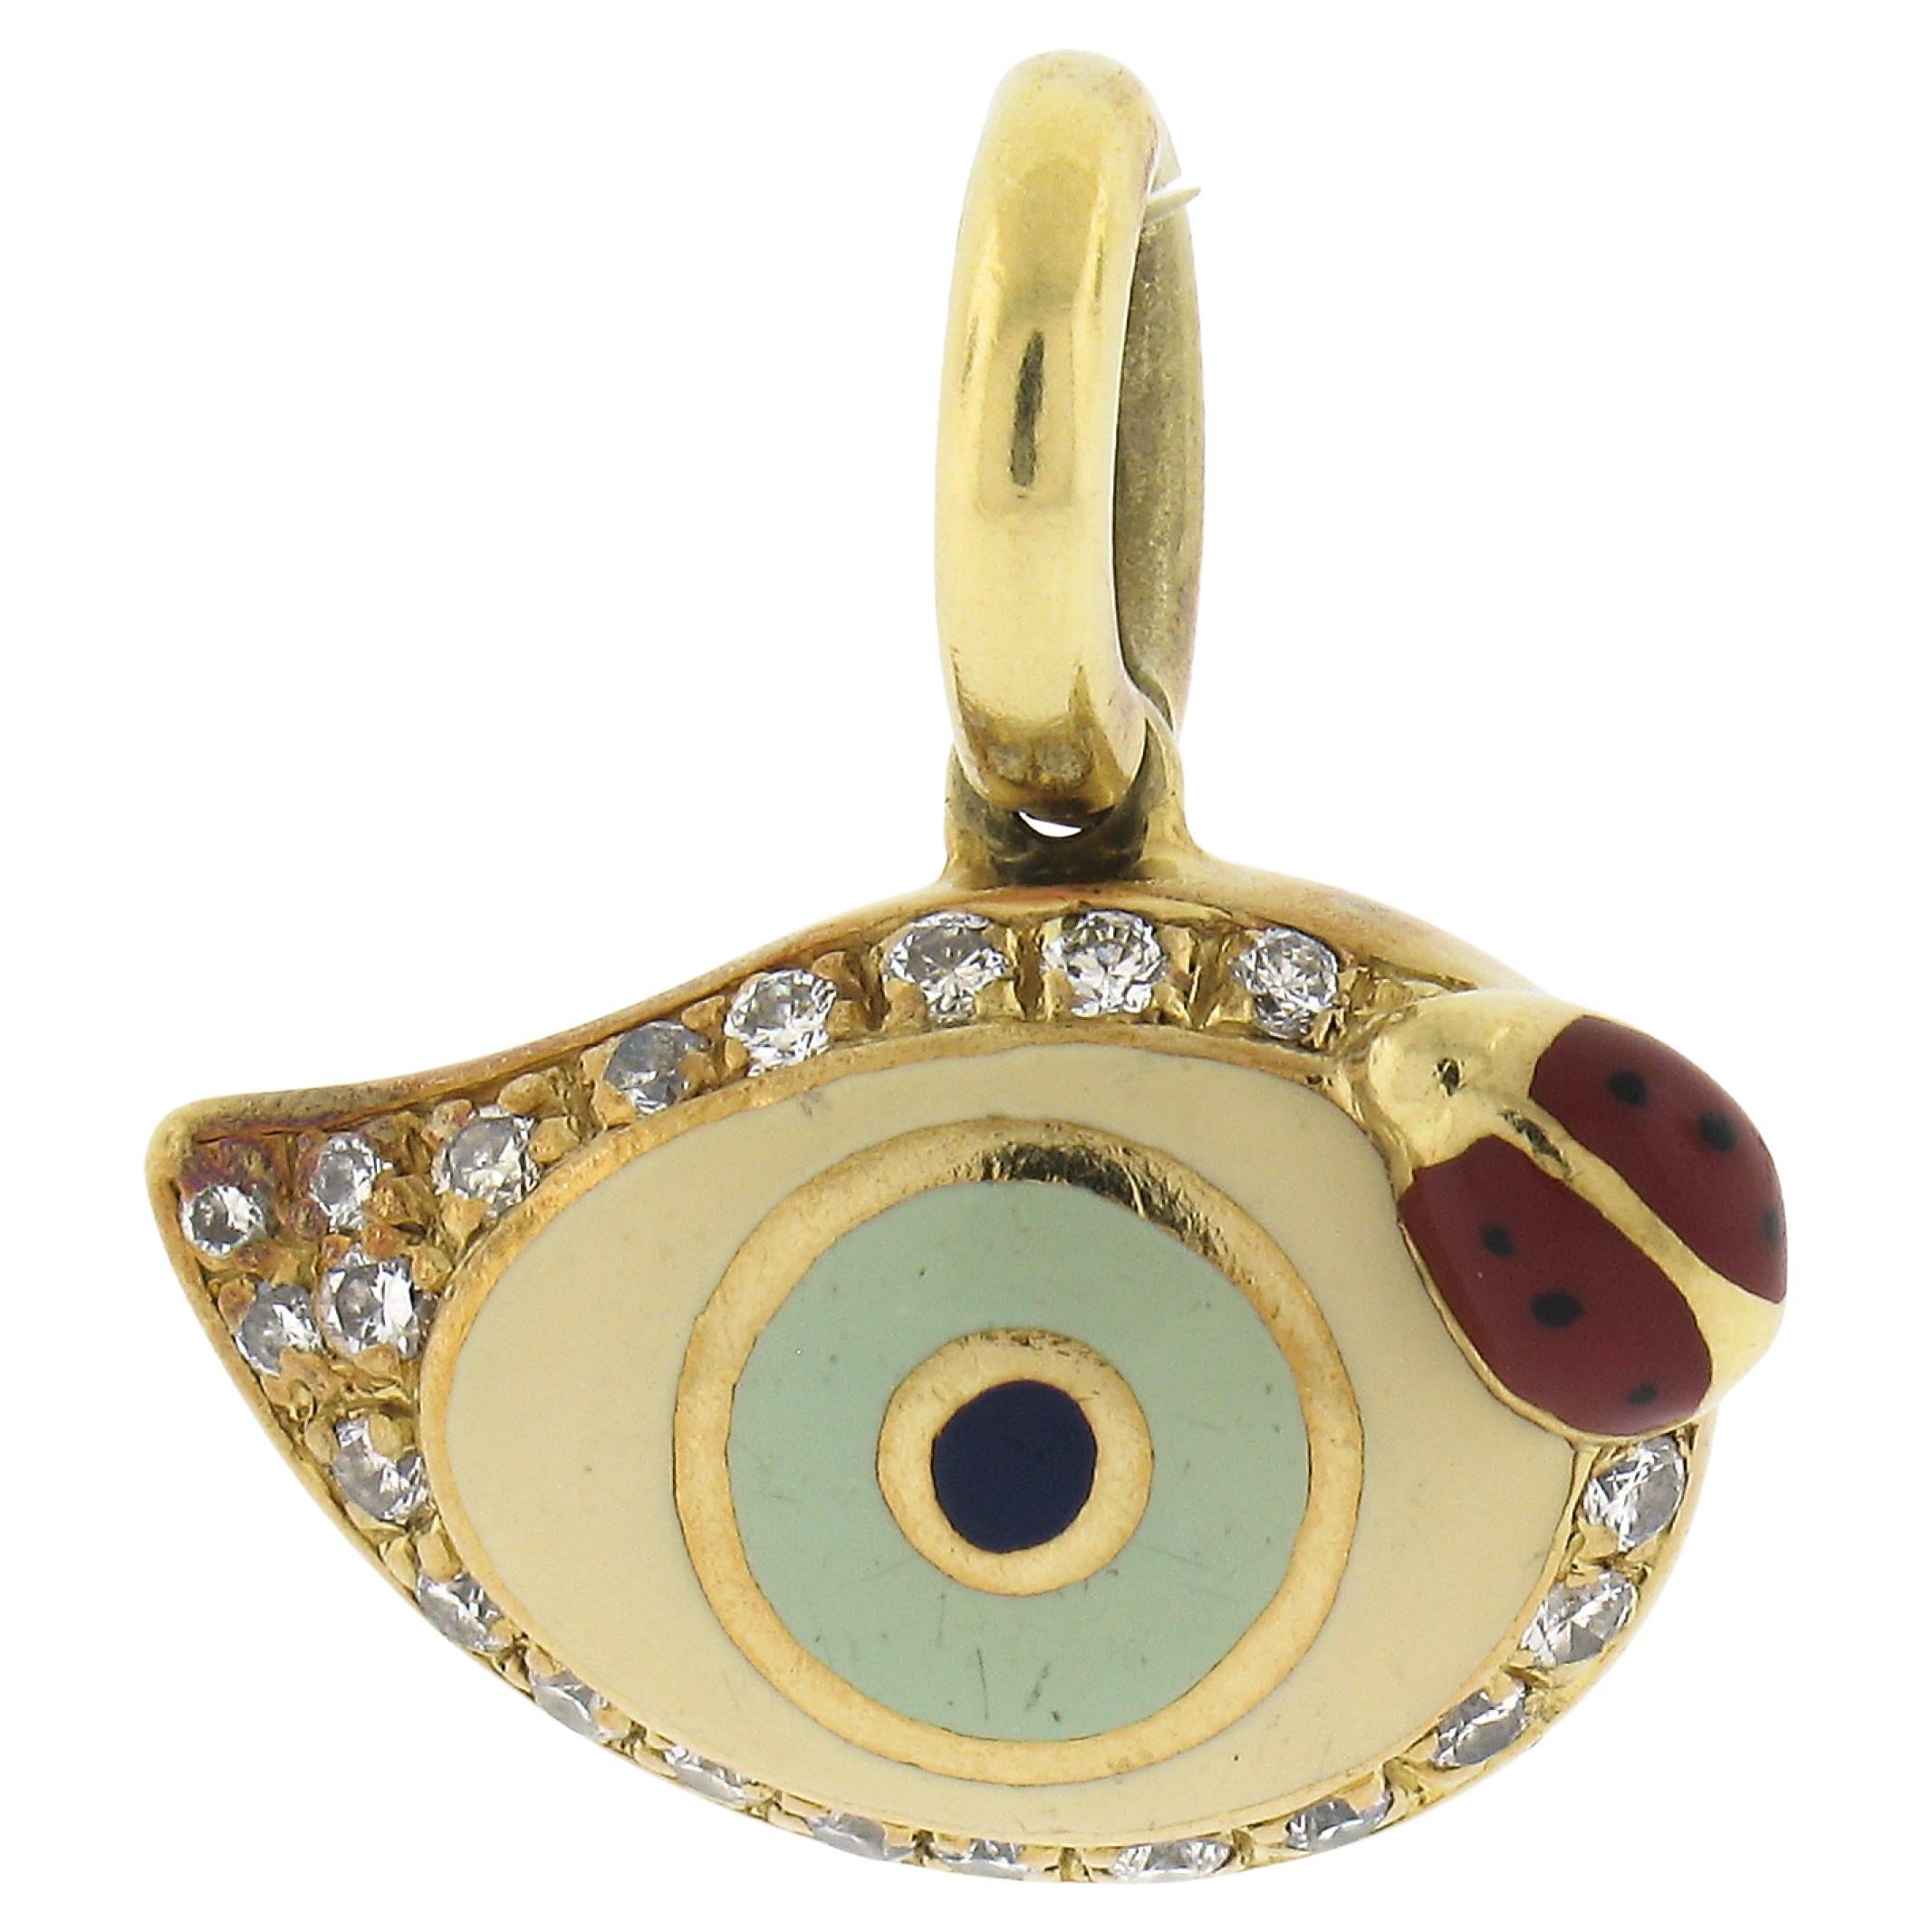 Aaron Basha 18K Yellow Gold Evil Eye Lady Bug Diamond Enamel Charm Pendant